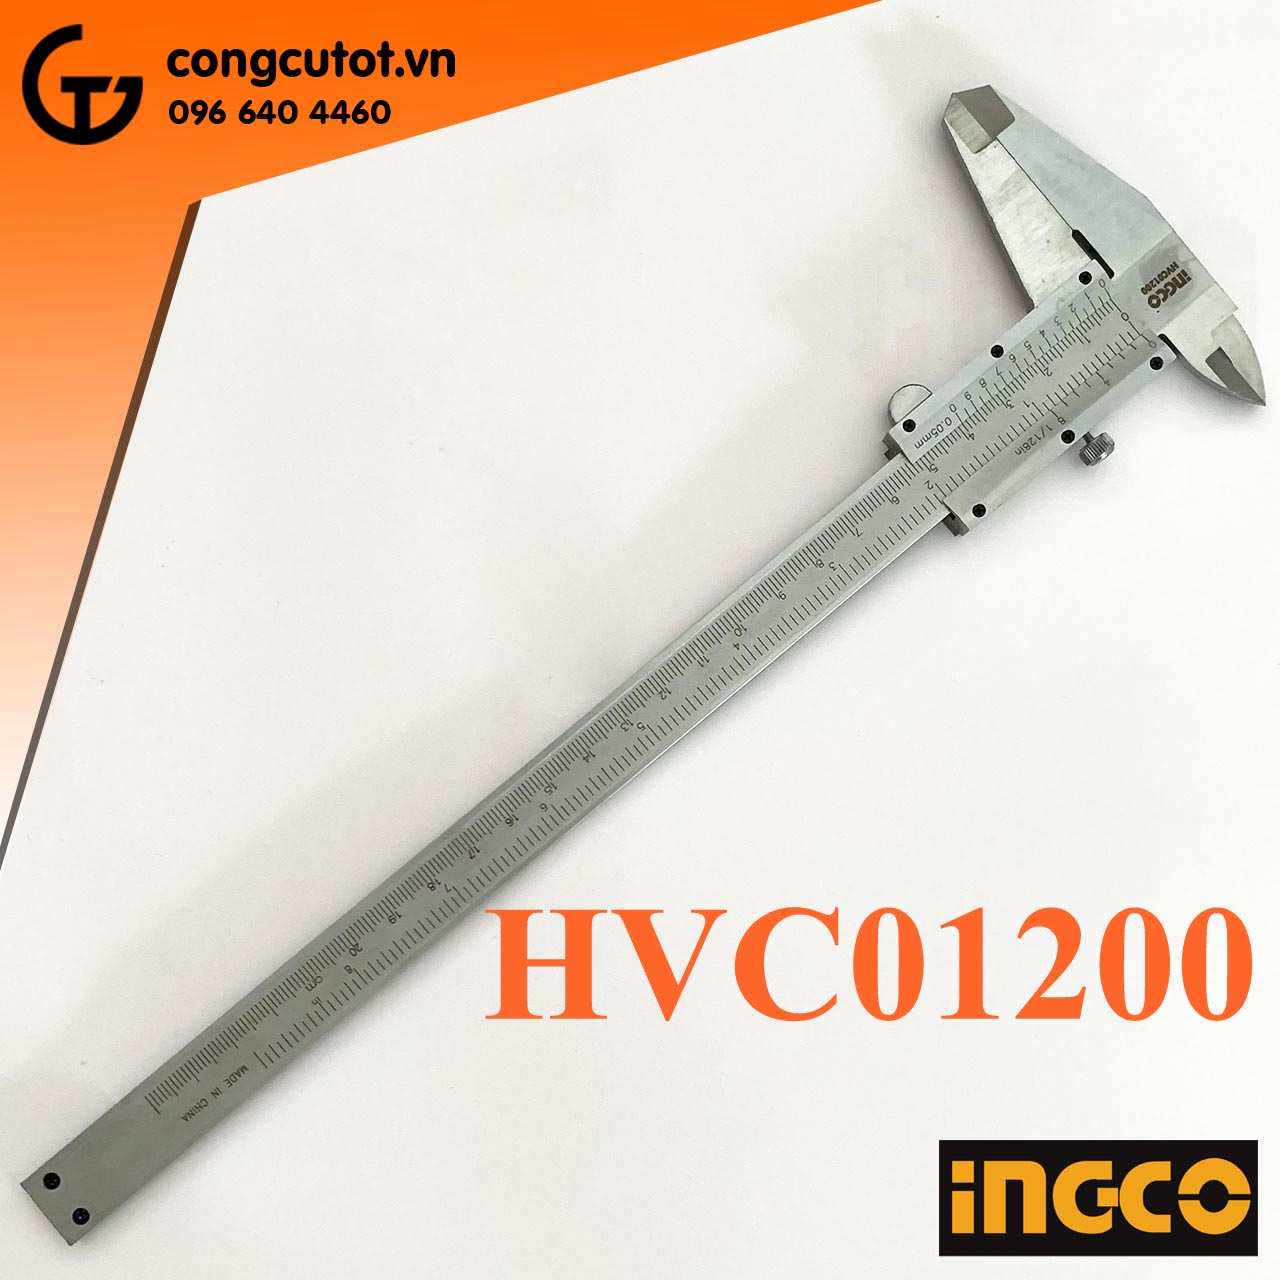 Công cụ thước kẹp cơ khí 200mm của thương hiệu Ingco